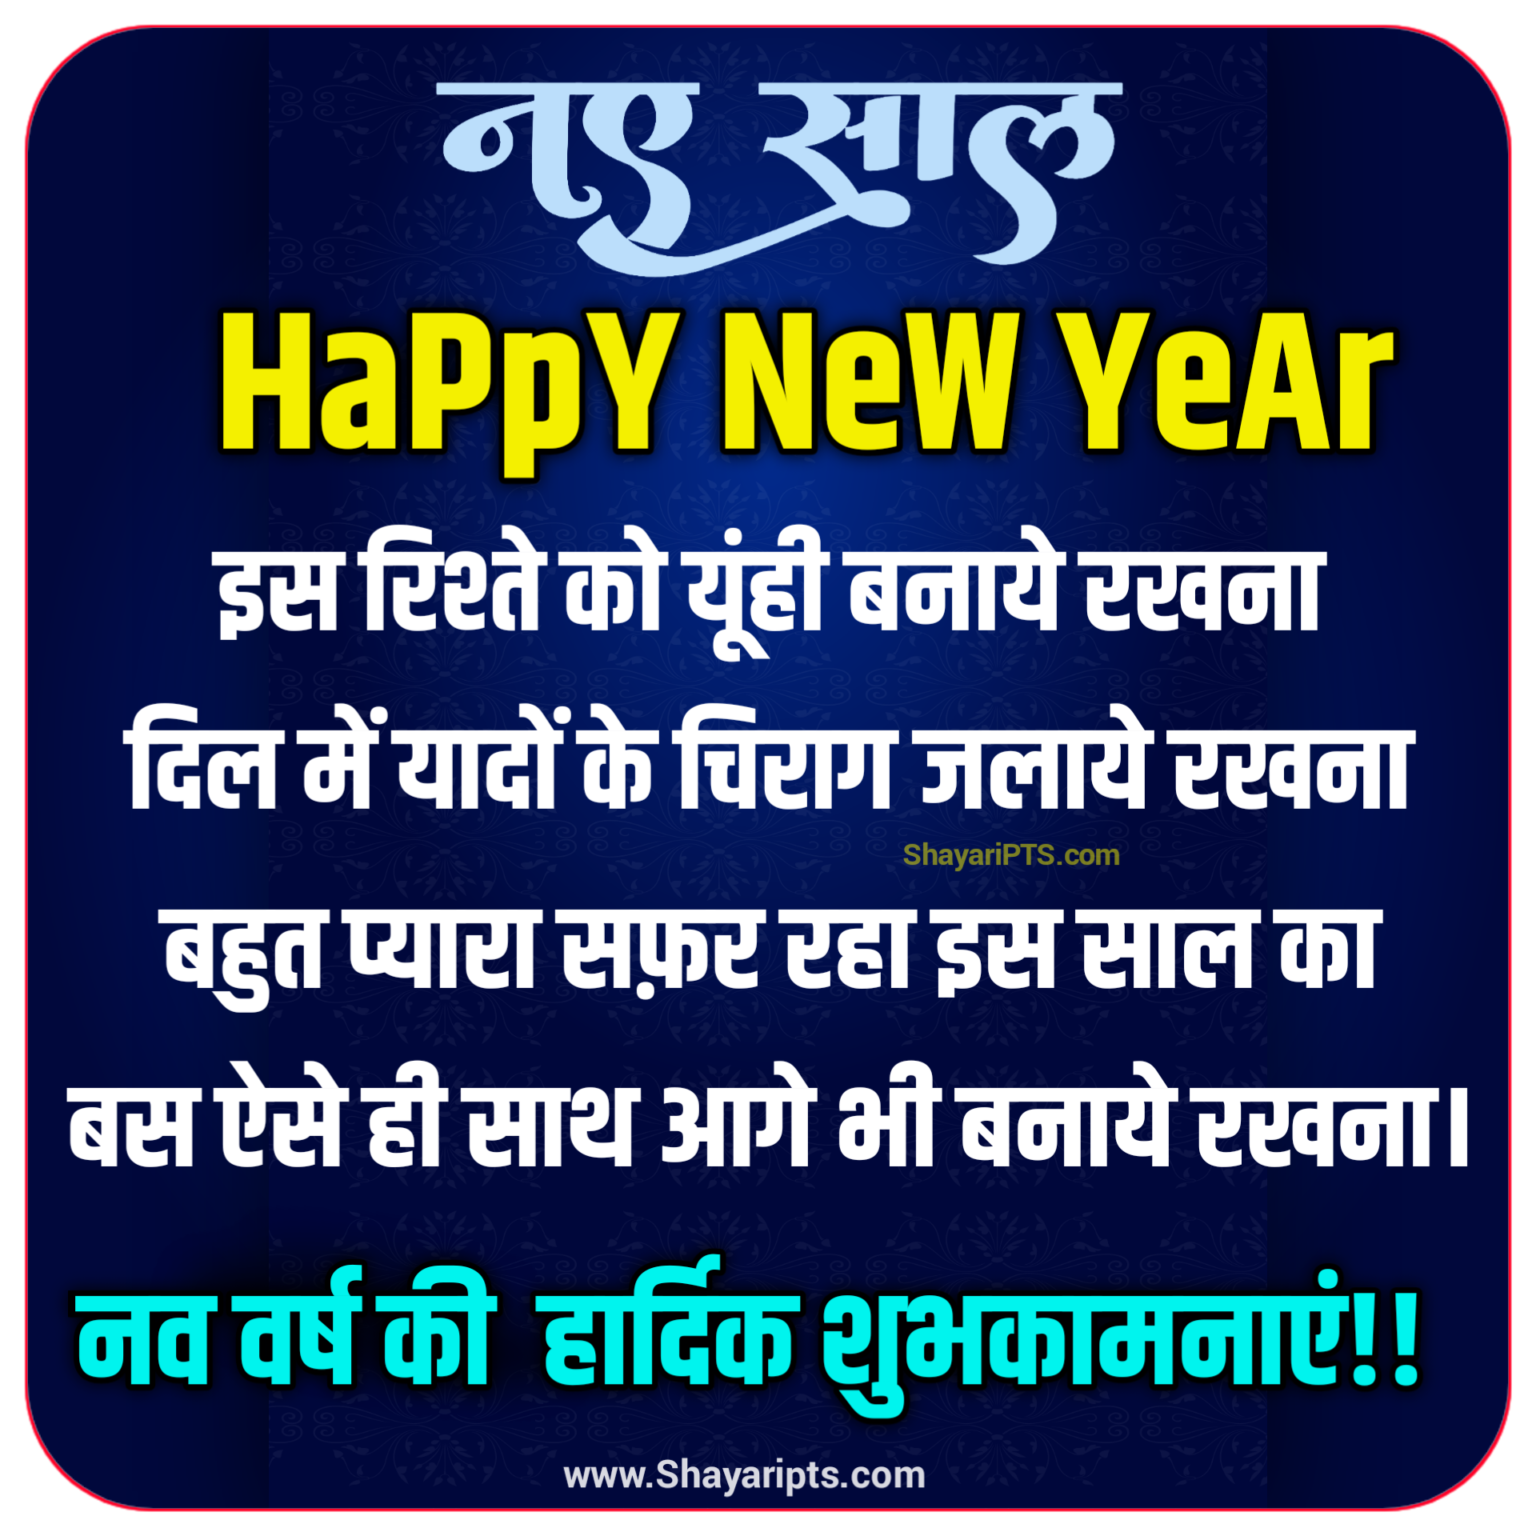 Happy New year shayari images In Hindi Naya Saal ki Shayari images